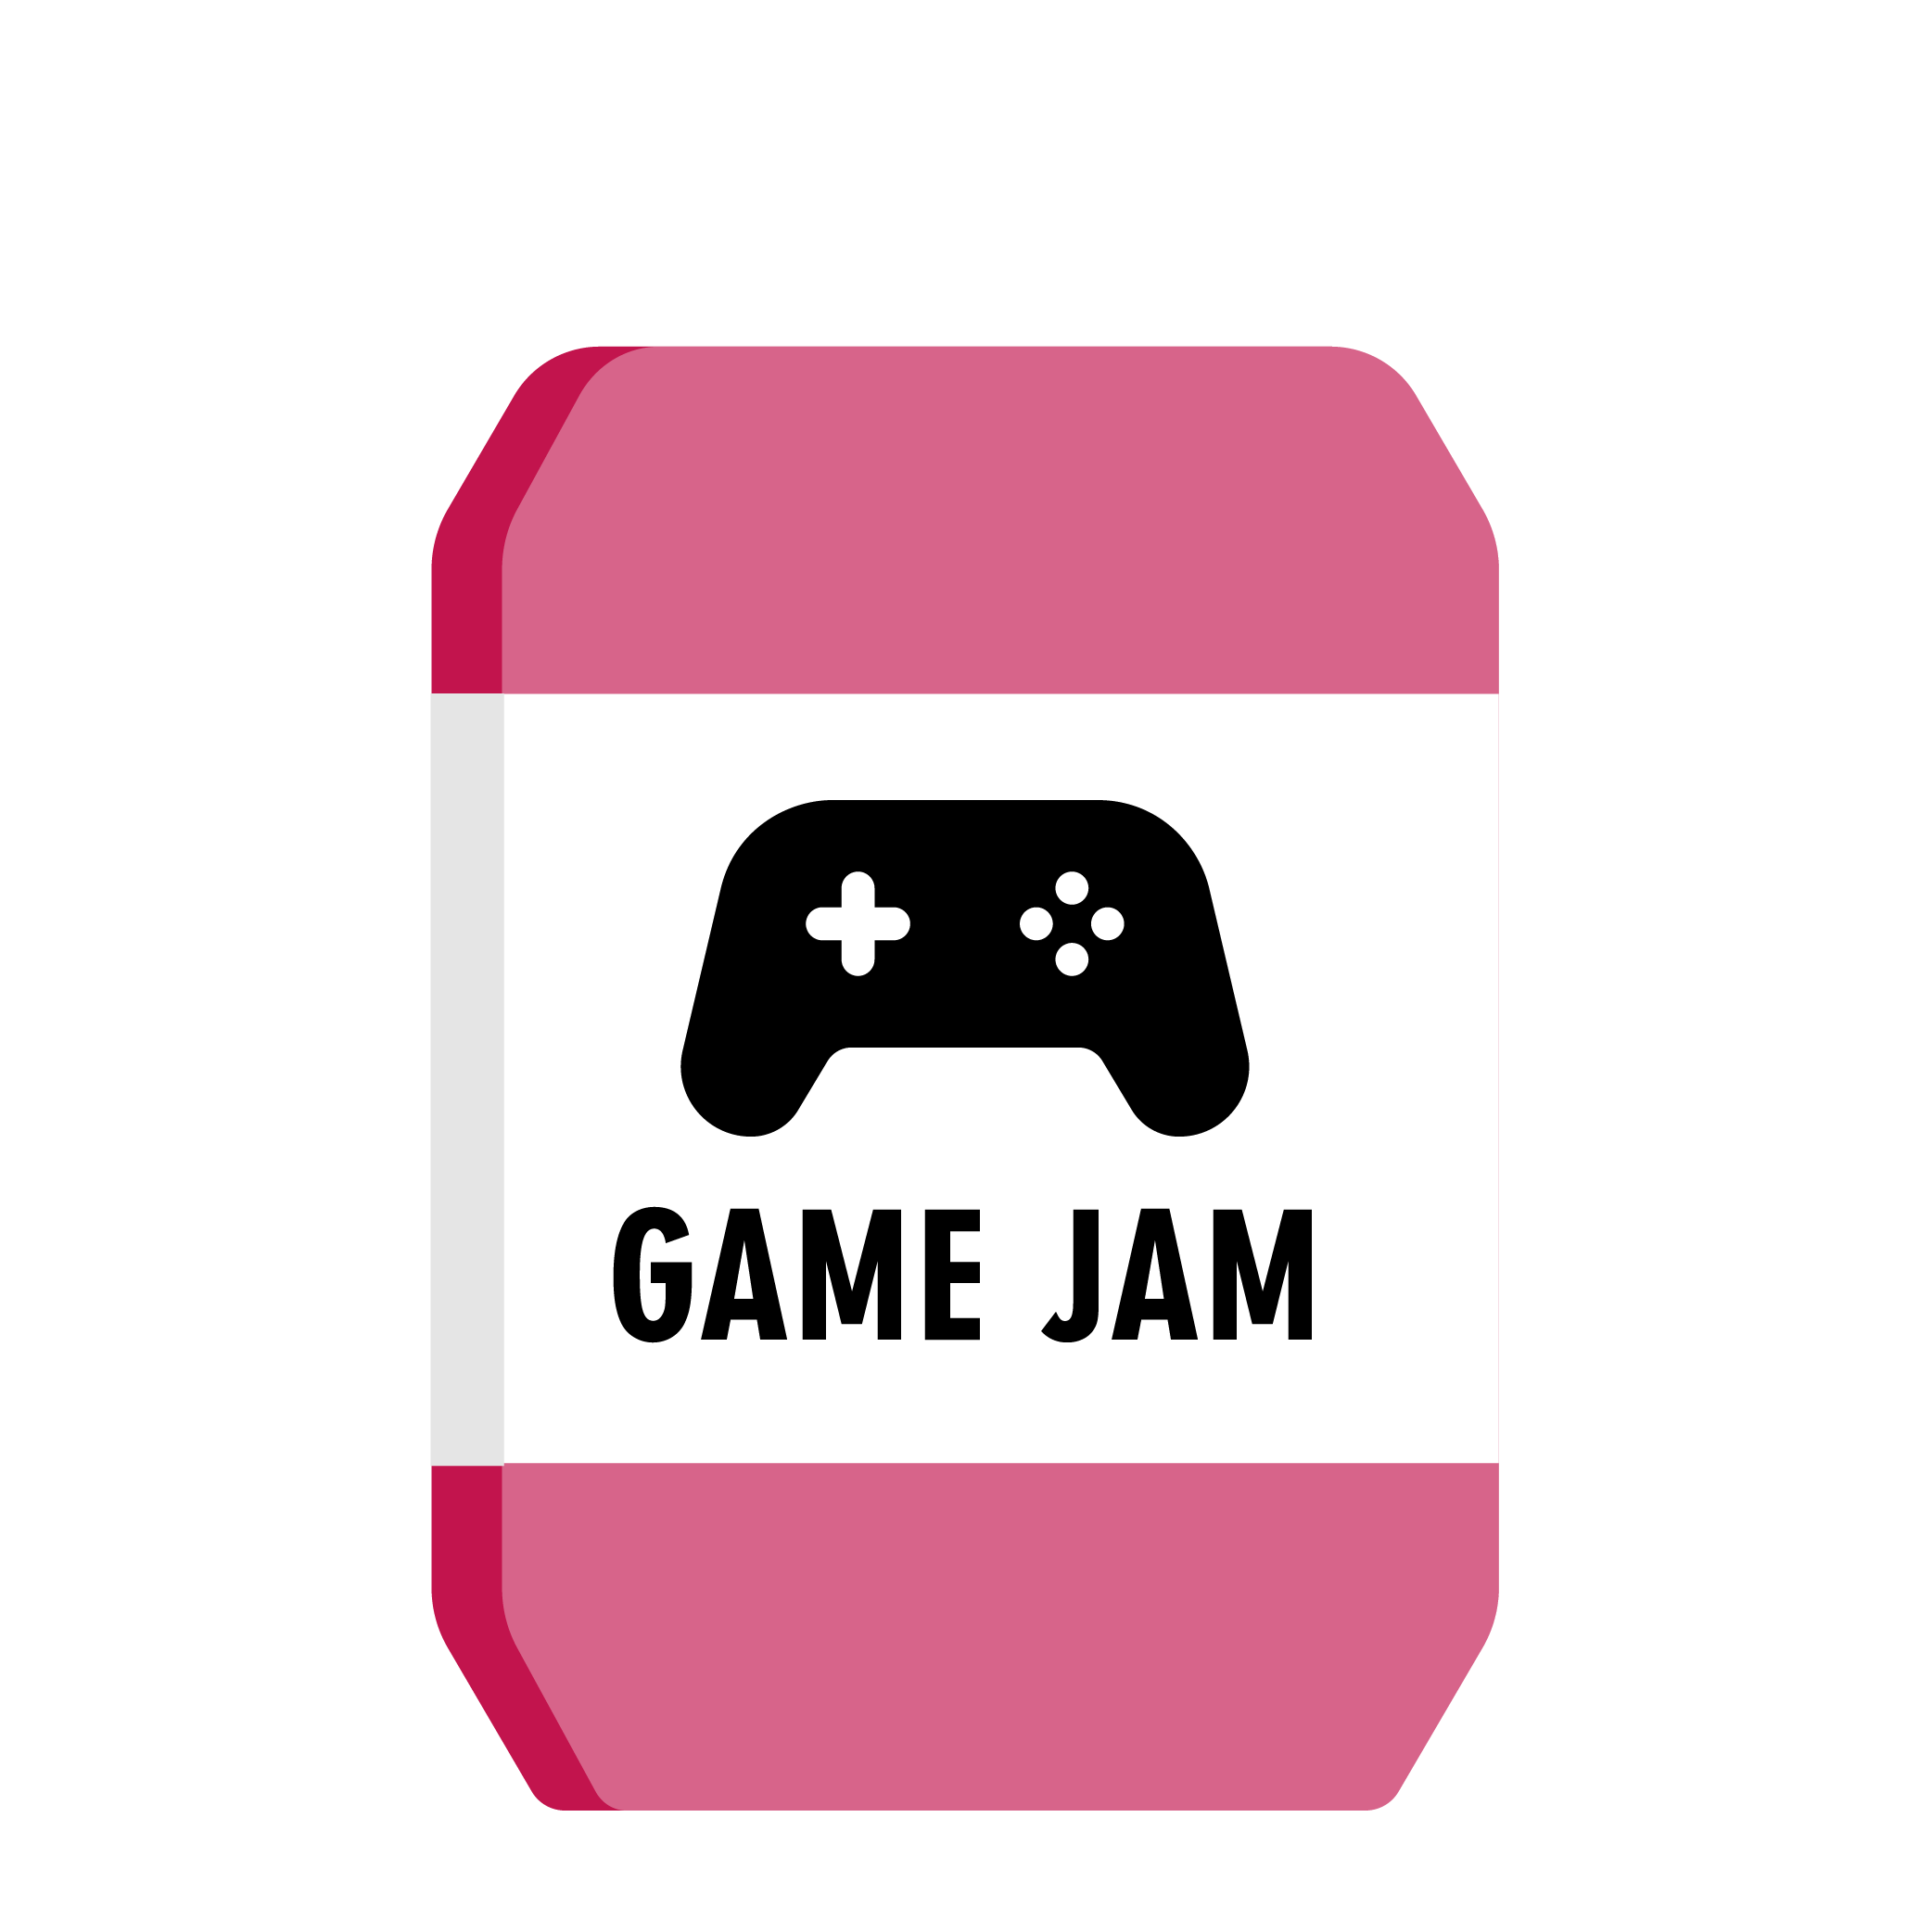 Game jam logo